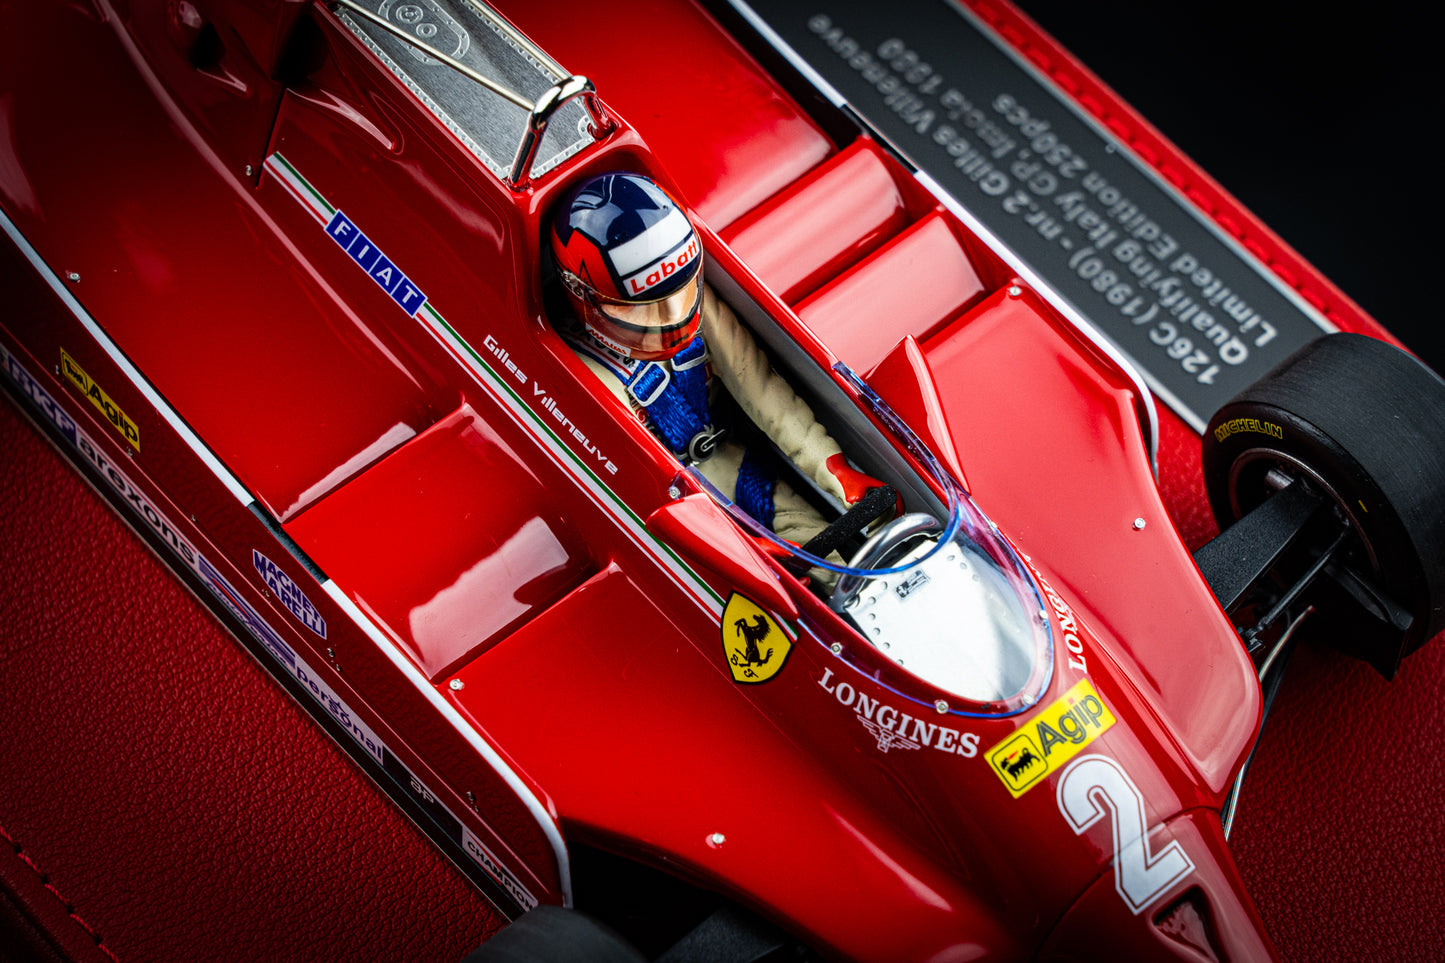 Gilles Villeneuve Ferrari 126C #2 lim. 250 pcs. - Quali GP Imola 1980 - GP Replicas 1:18